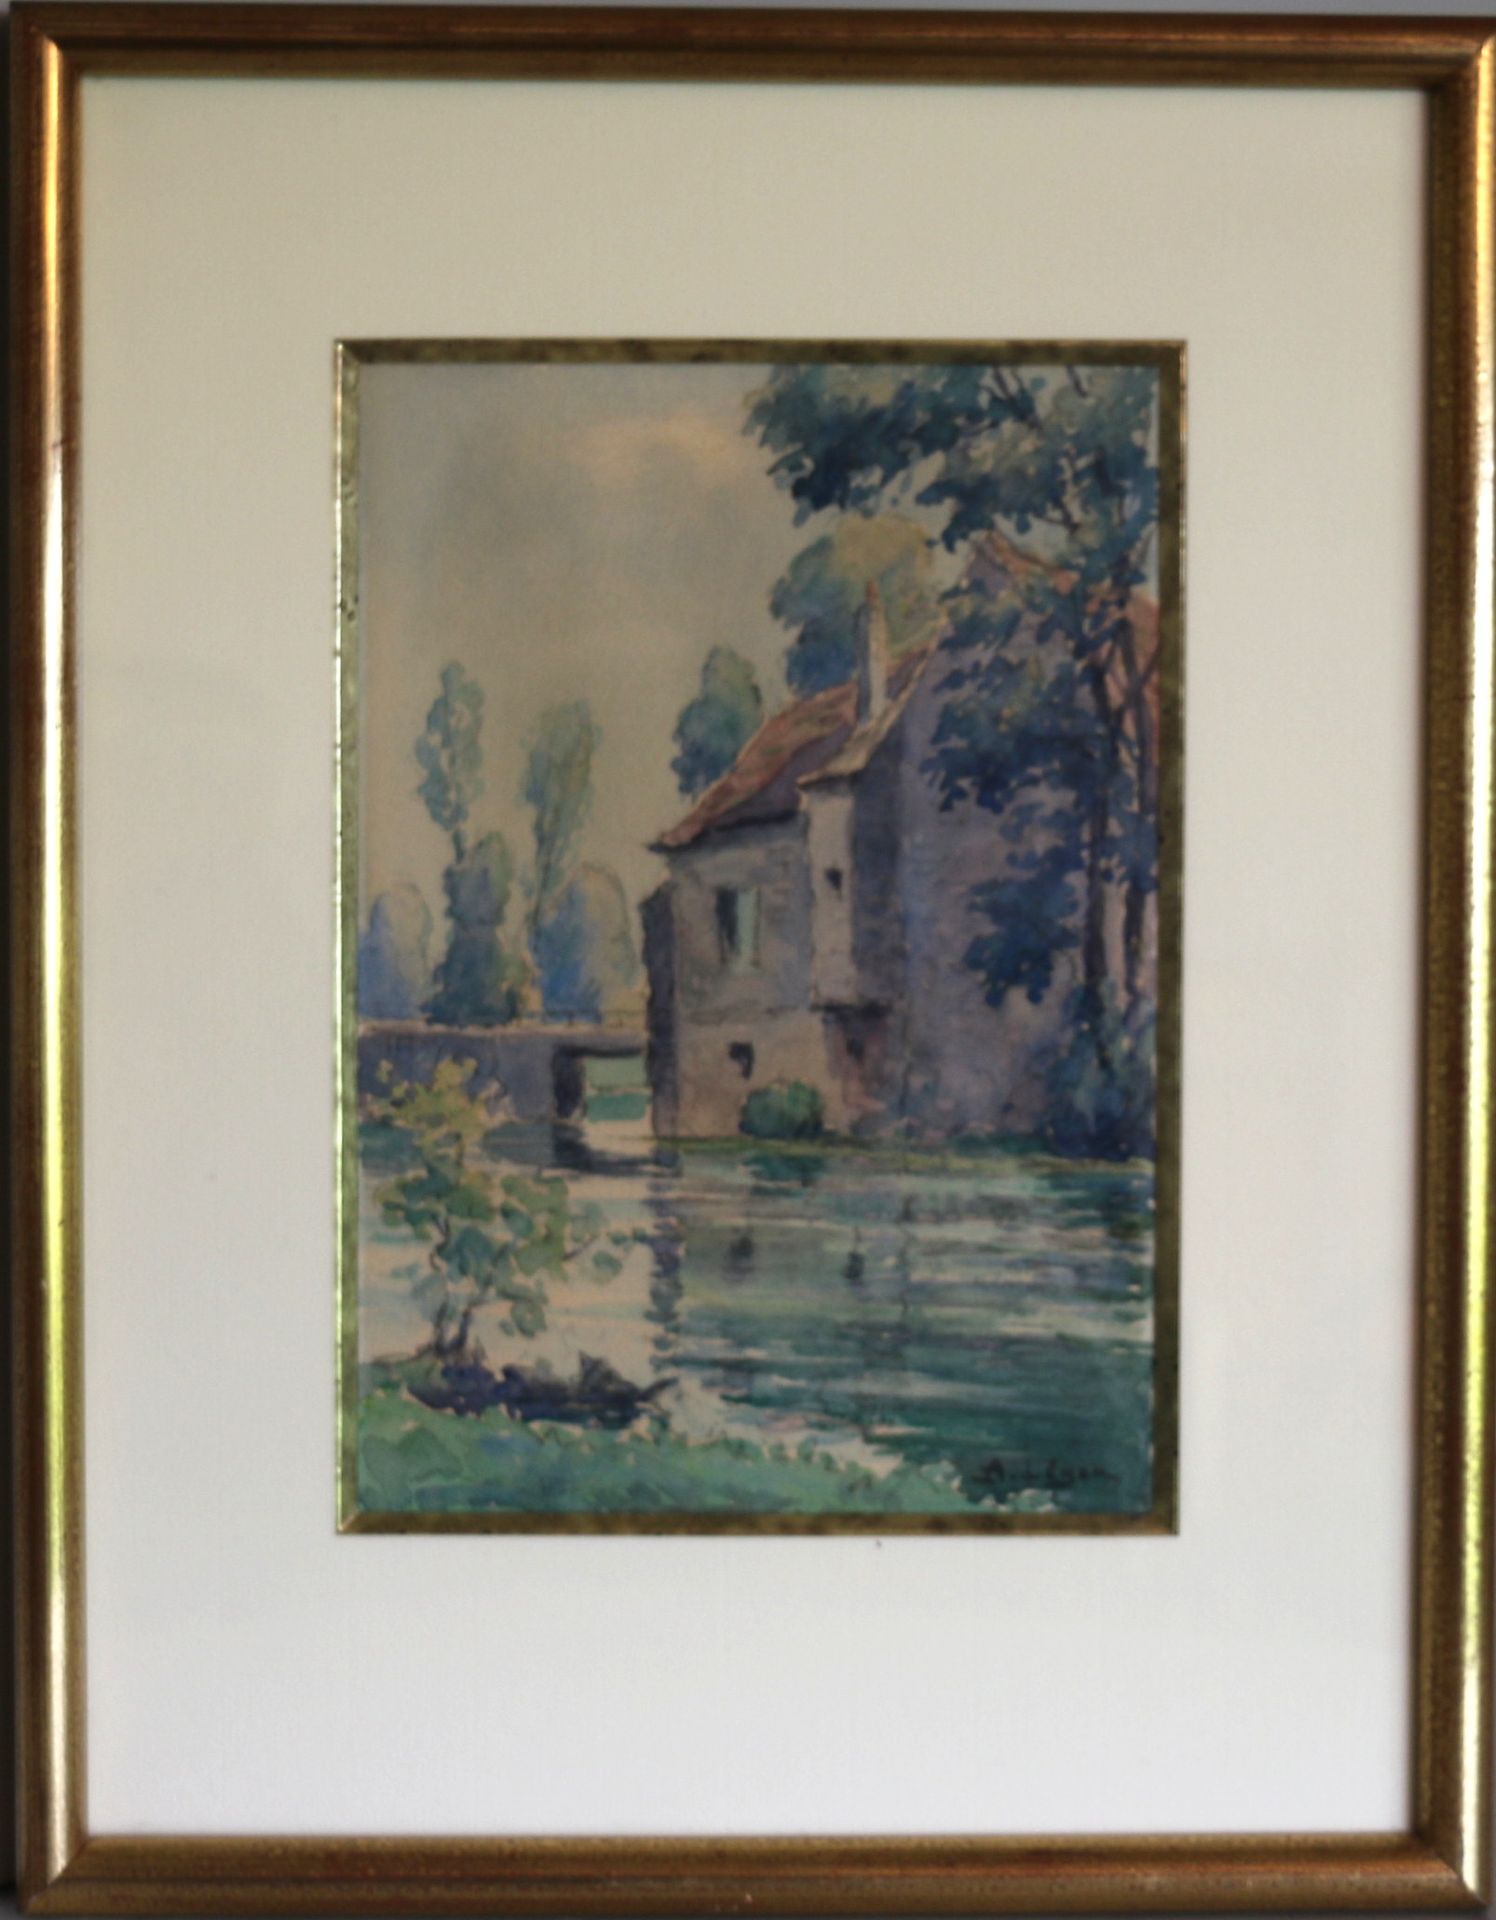 Null 水彩画，有图案，12 x 17厘米，正在展出 / A. LEGER "Le moulin" 水彩画，有图案，第十九世纪末，21 x 15厘米，正在展出